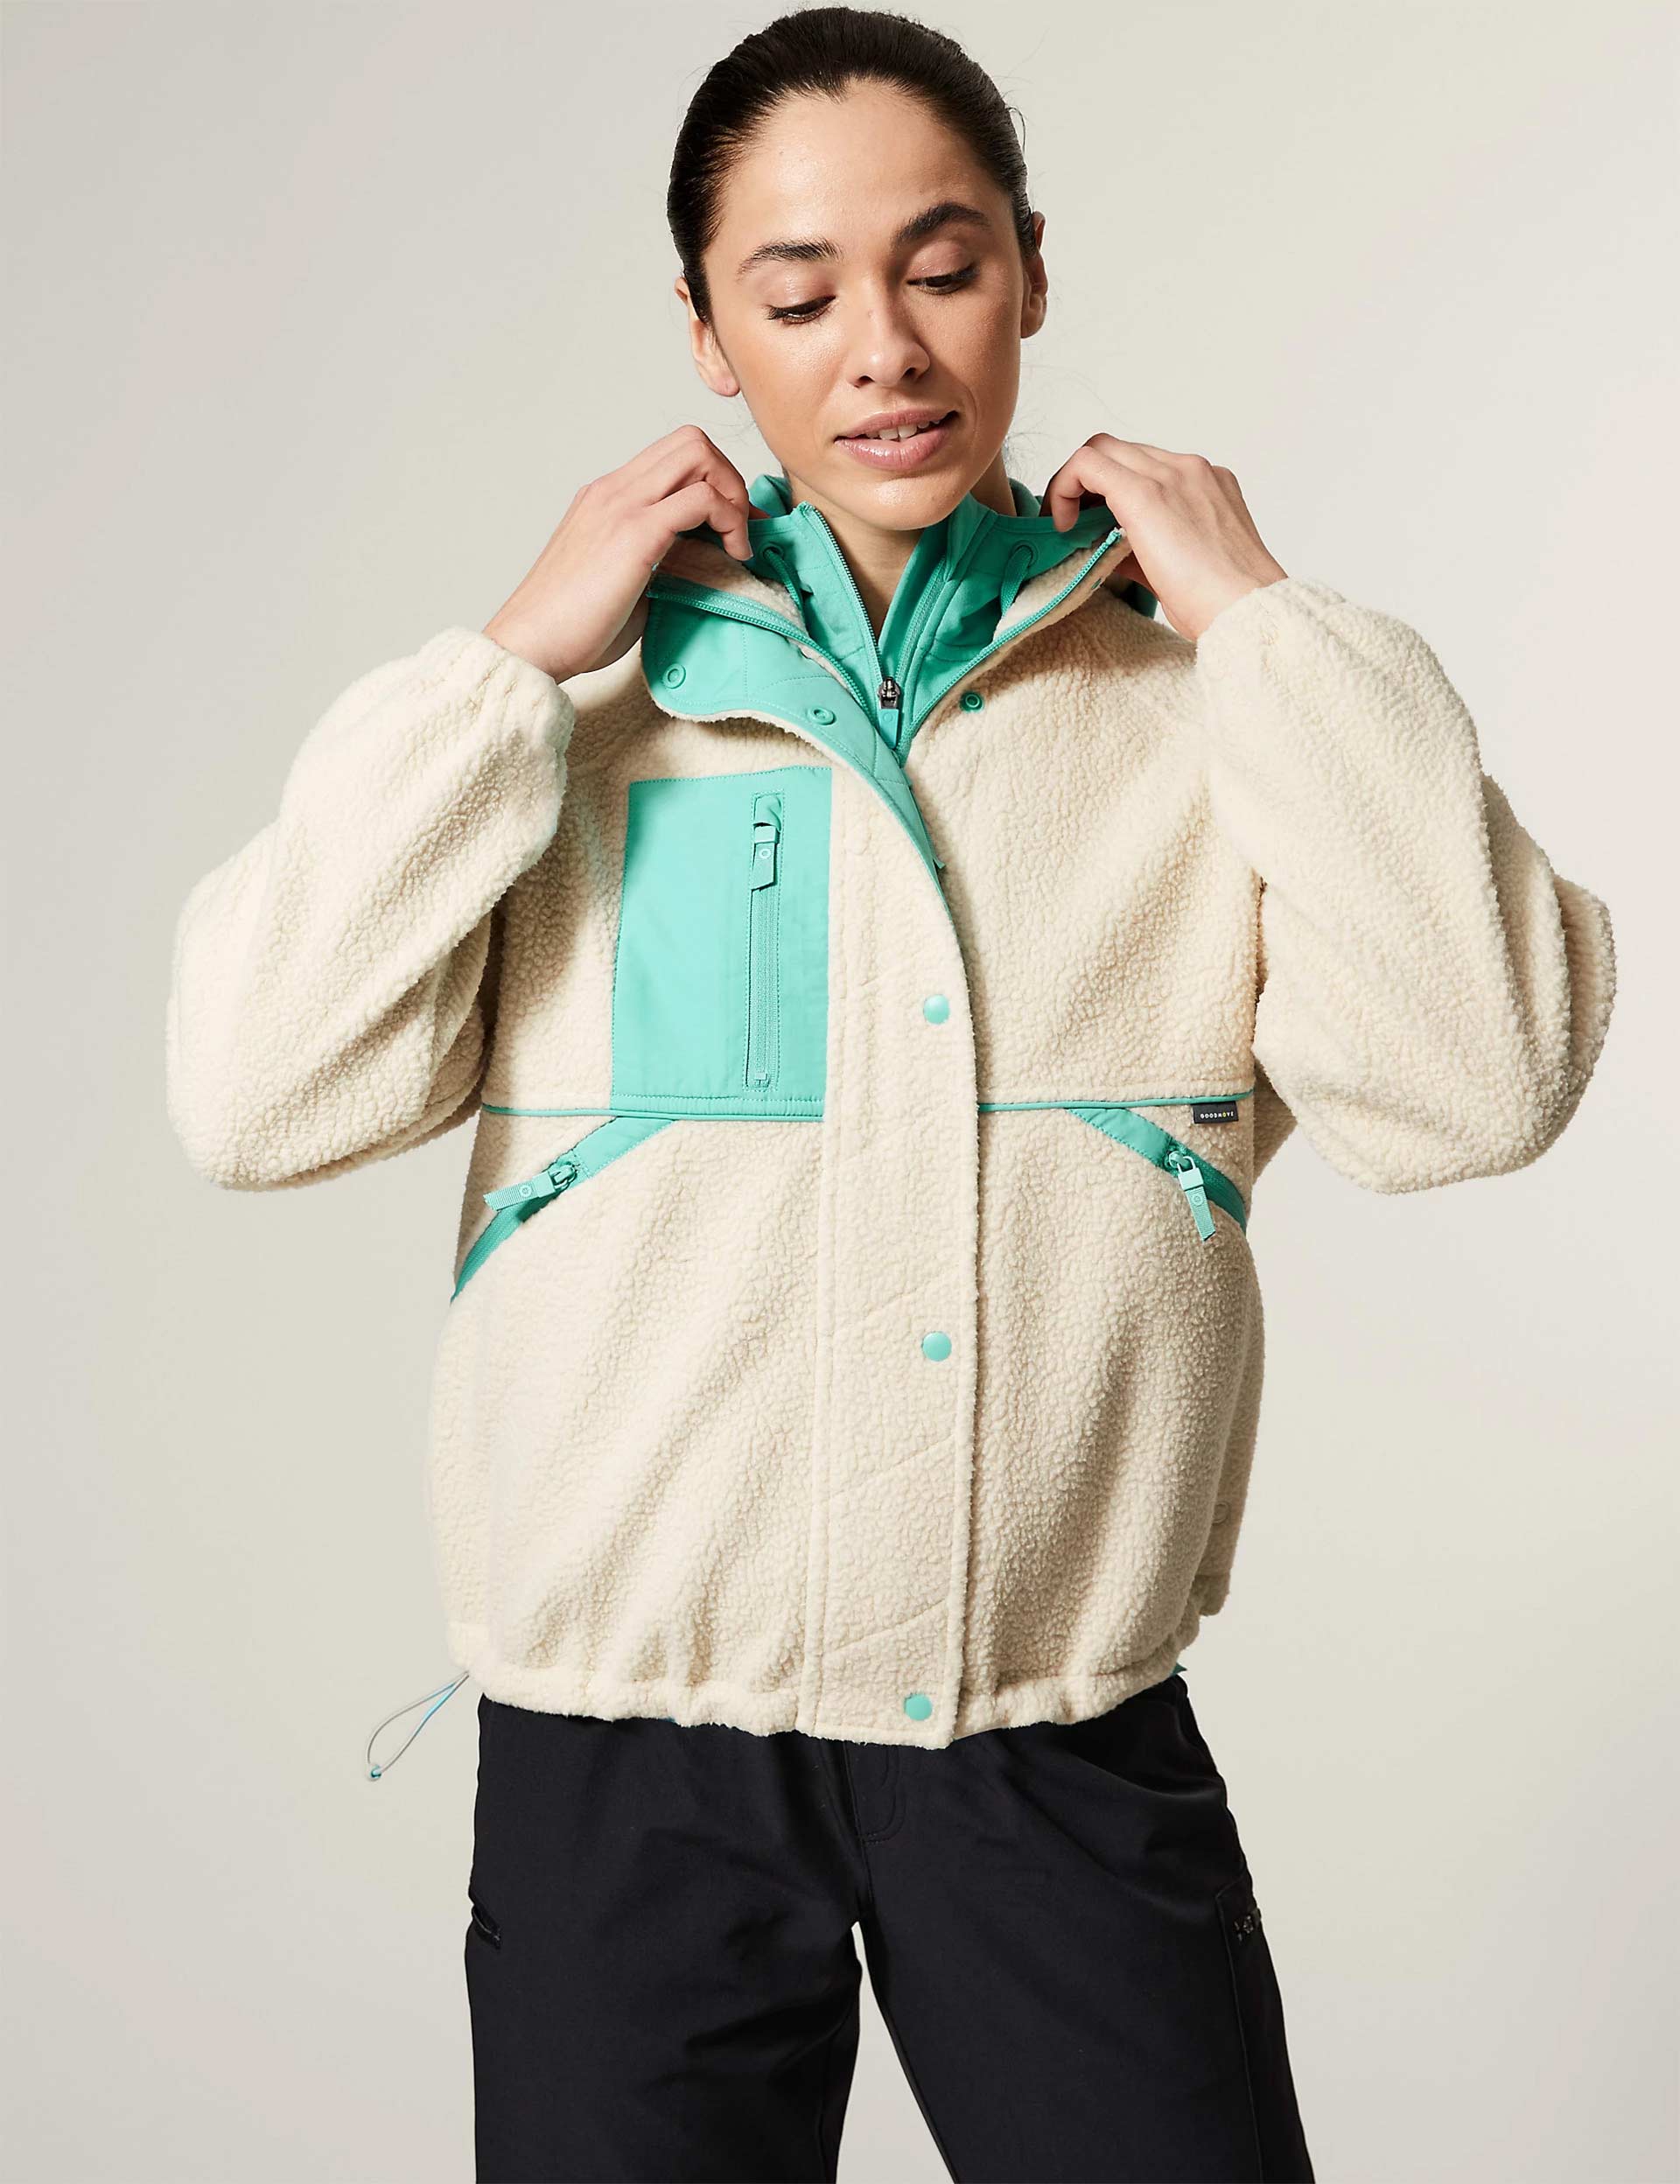  THE GYM PEOPLE Womens Half Zip Pullover Fleece Stand Collar  Crop Sweatshirt